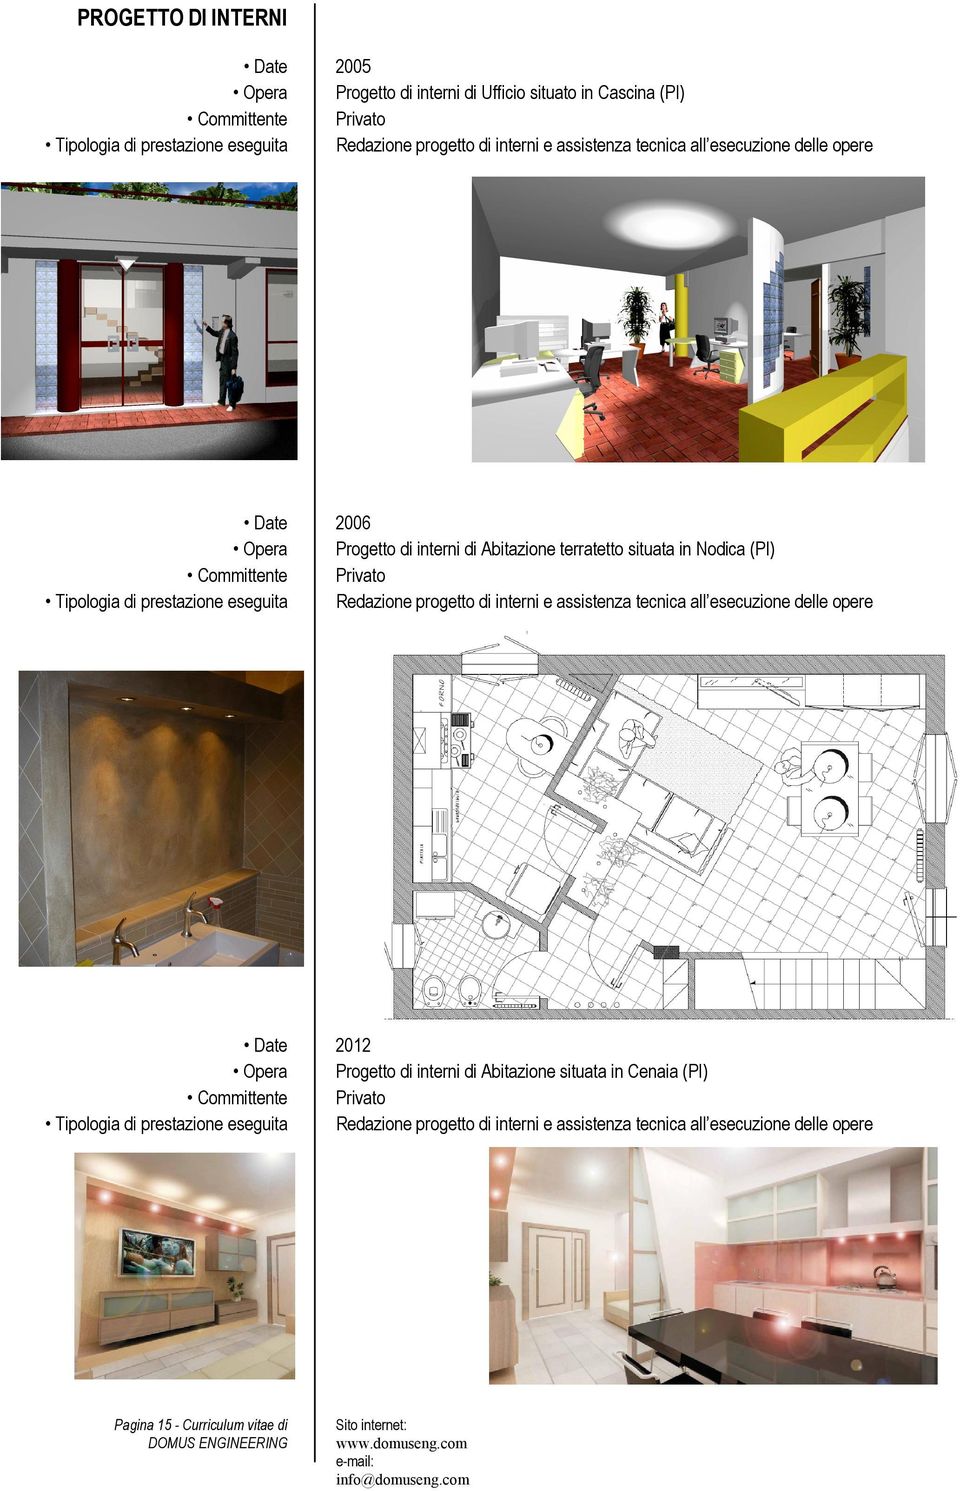 prestazione eseguita Redazione progetto di interni e assistenza tecnica all esecuzione delle opere Date 2012 Opera Progetto di interni di Abitazione